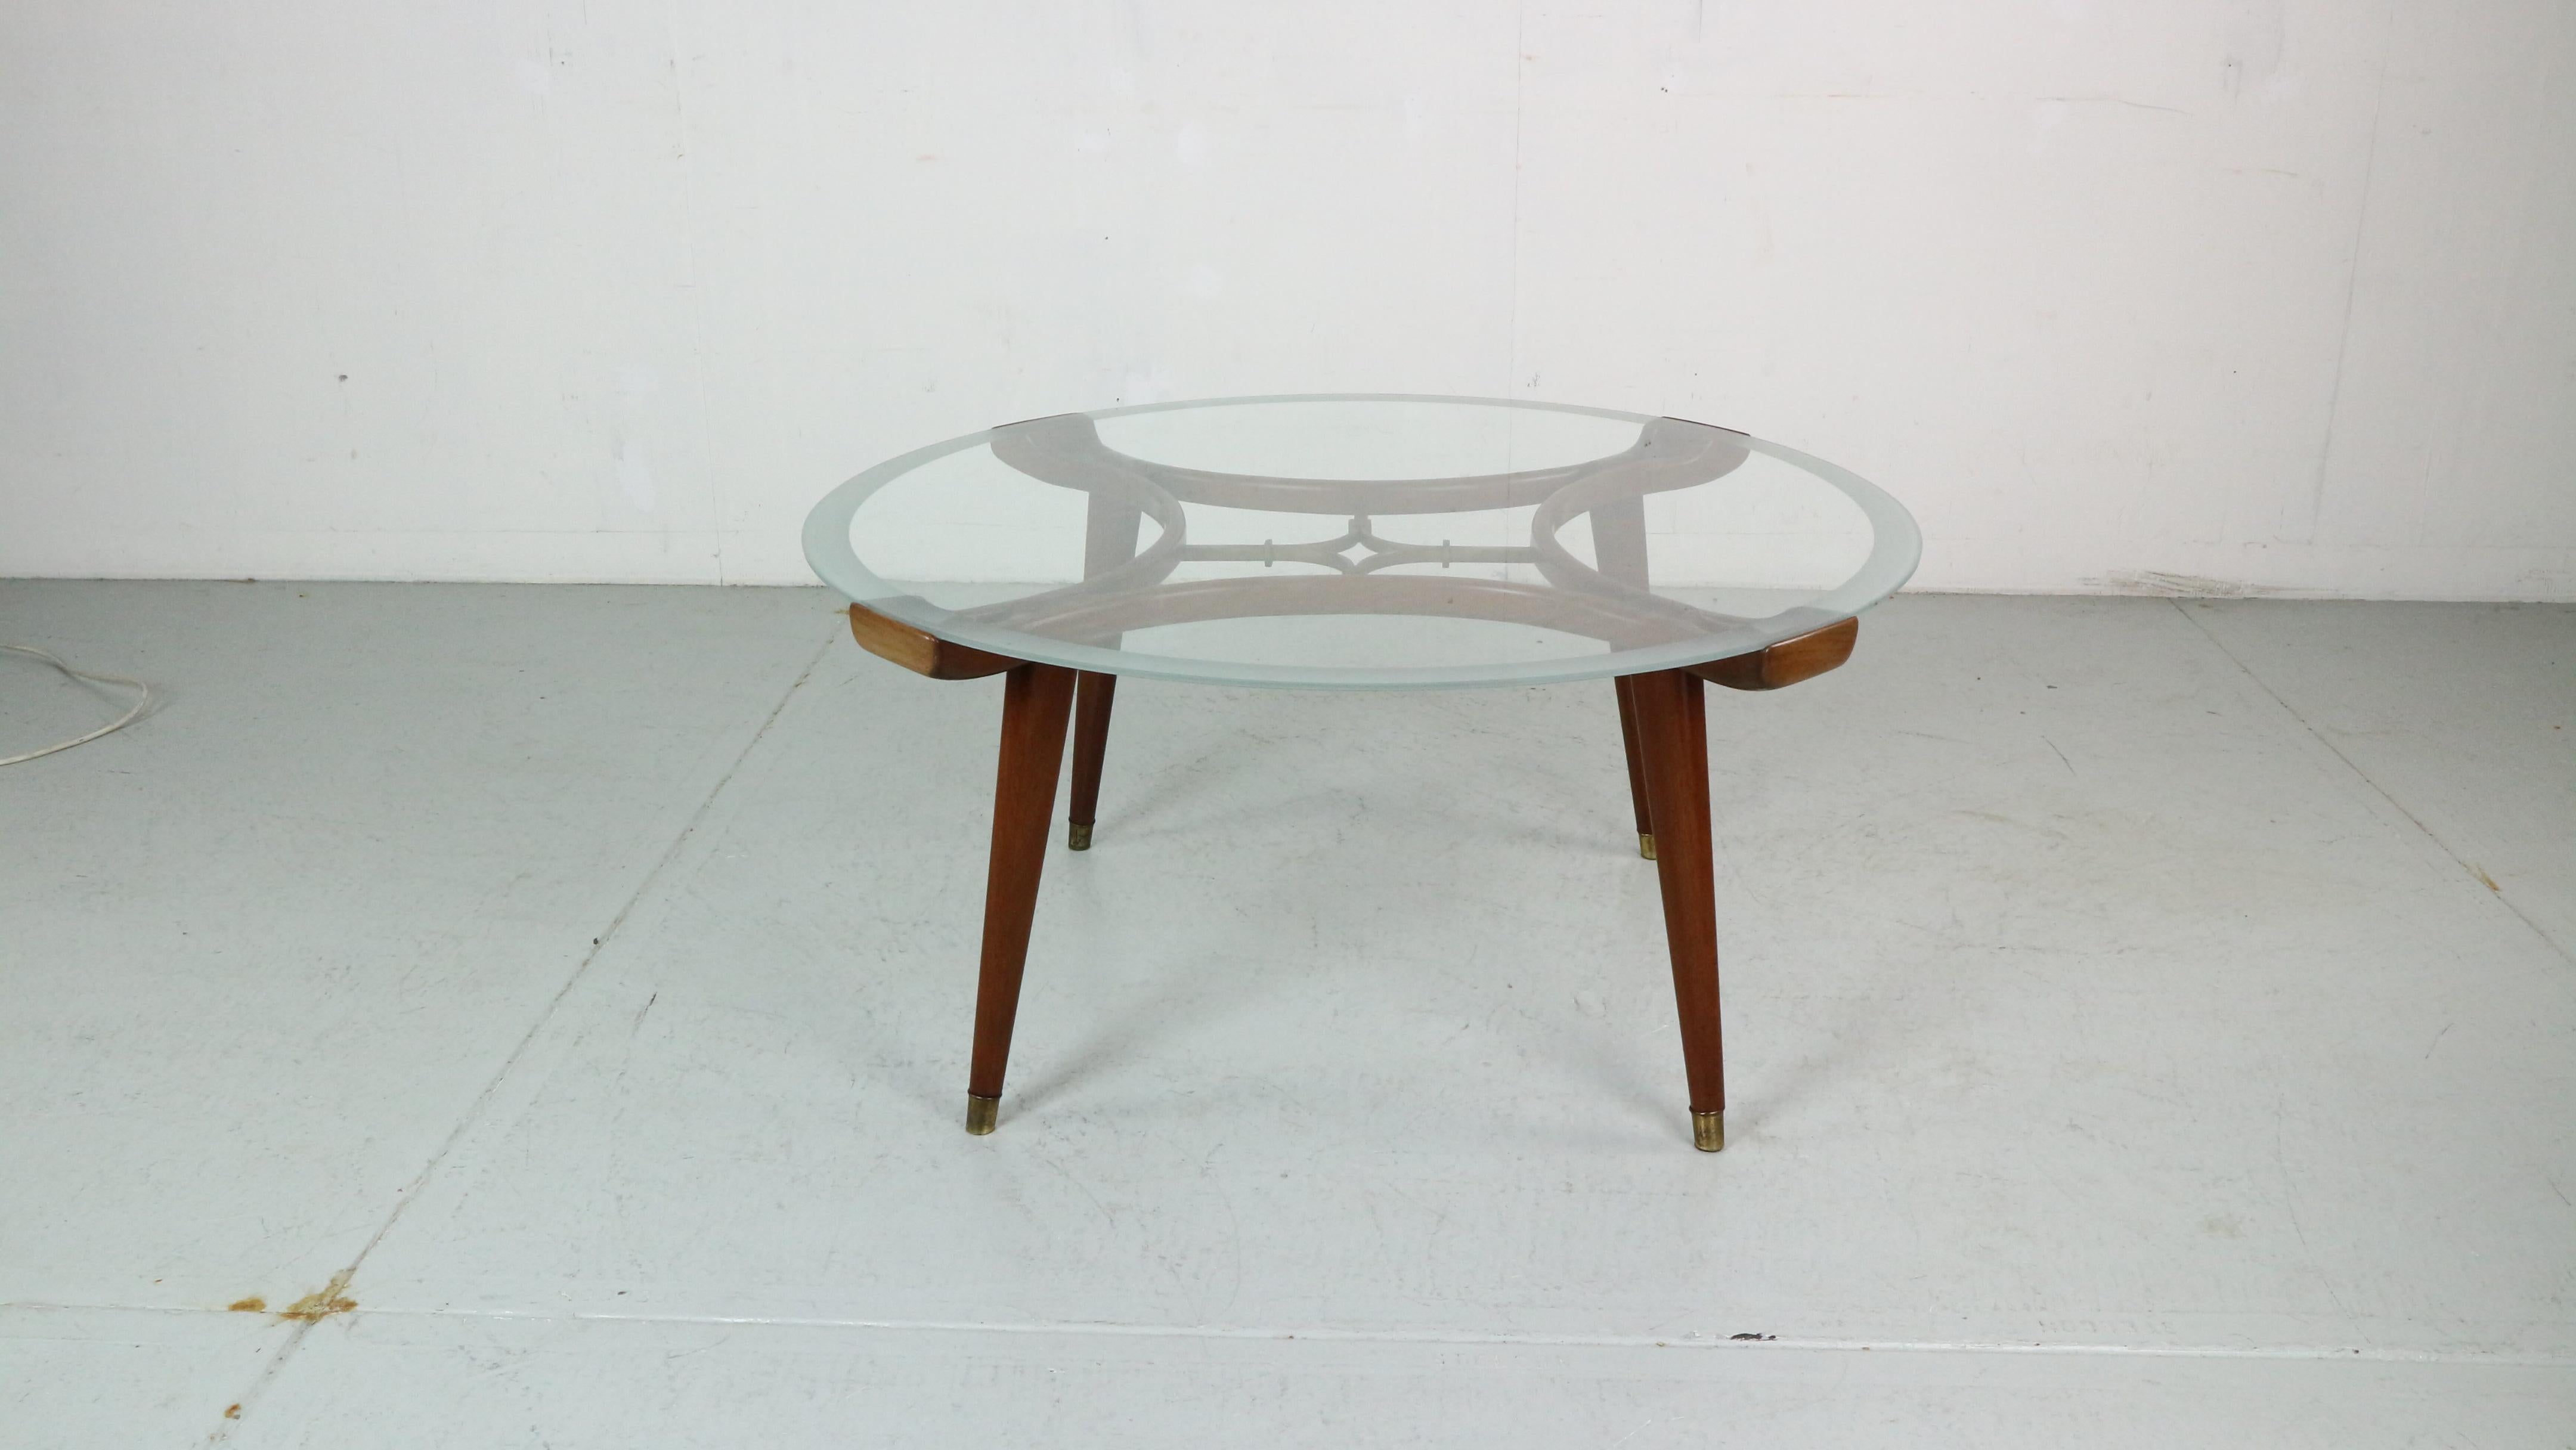 Table basse originale d'époque Mid-Century Modern, designée par William Watting, produite par Fristho, Pays-Bas, années 1950.

Nom du modèle : 